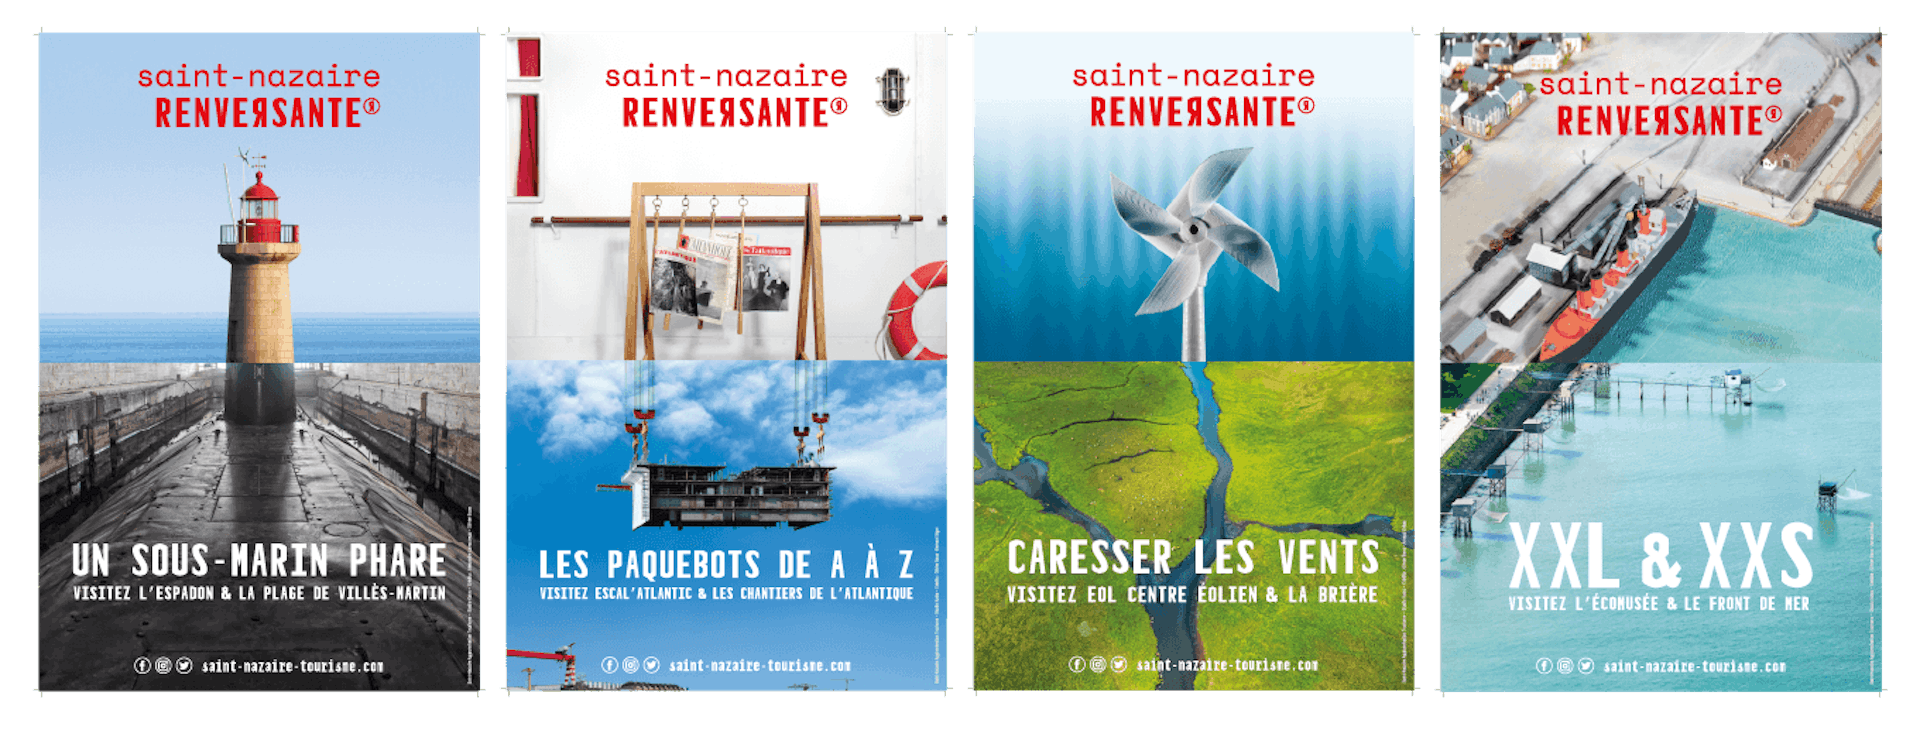 Présentation de la campagne de communication de Saint-Nazaire en 2020.